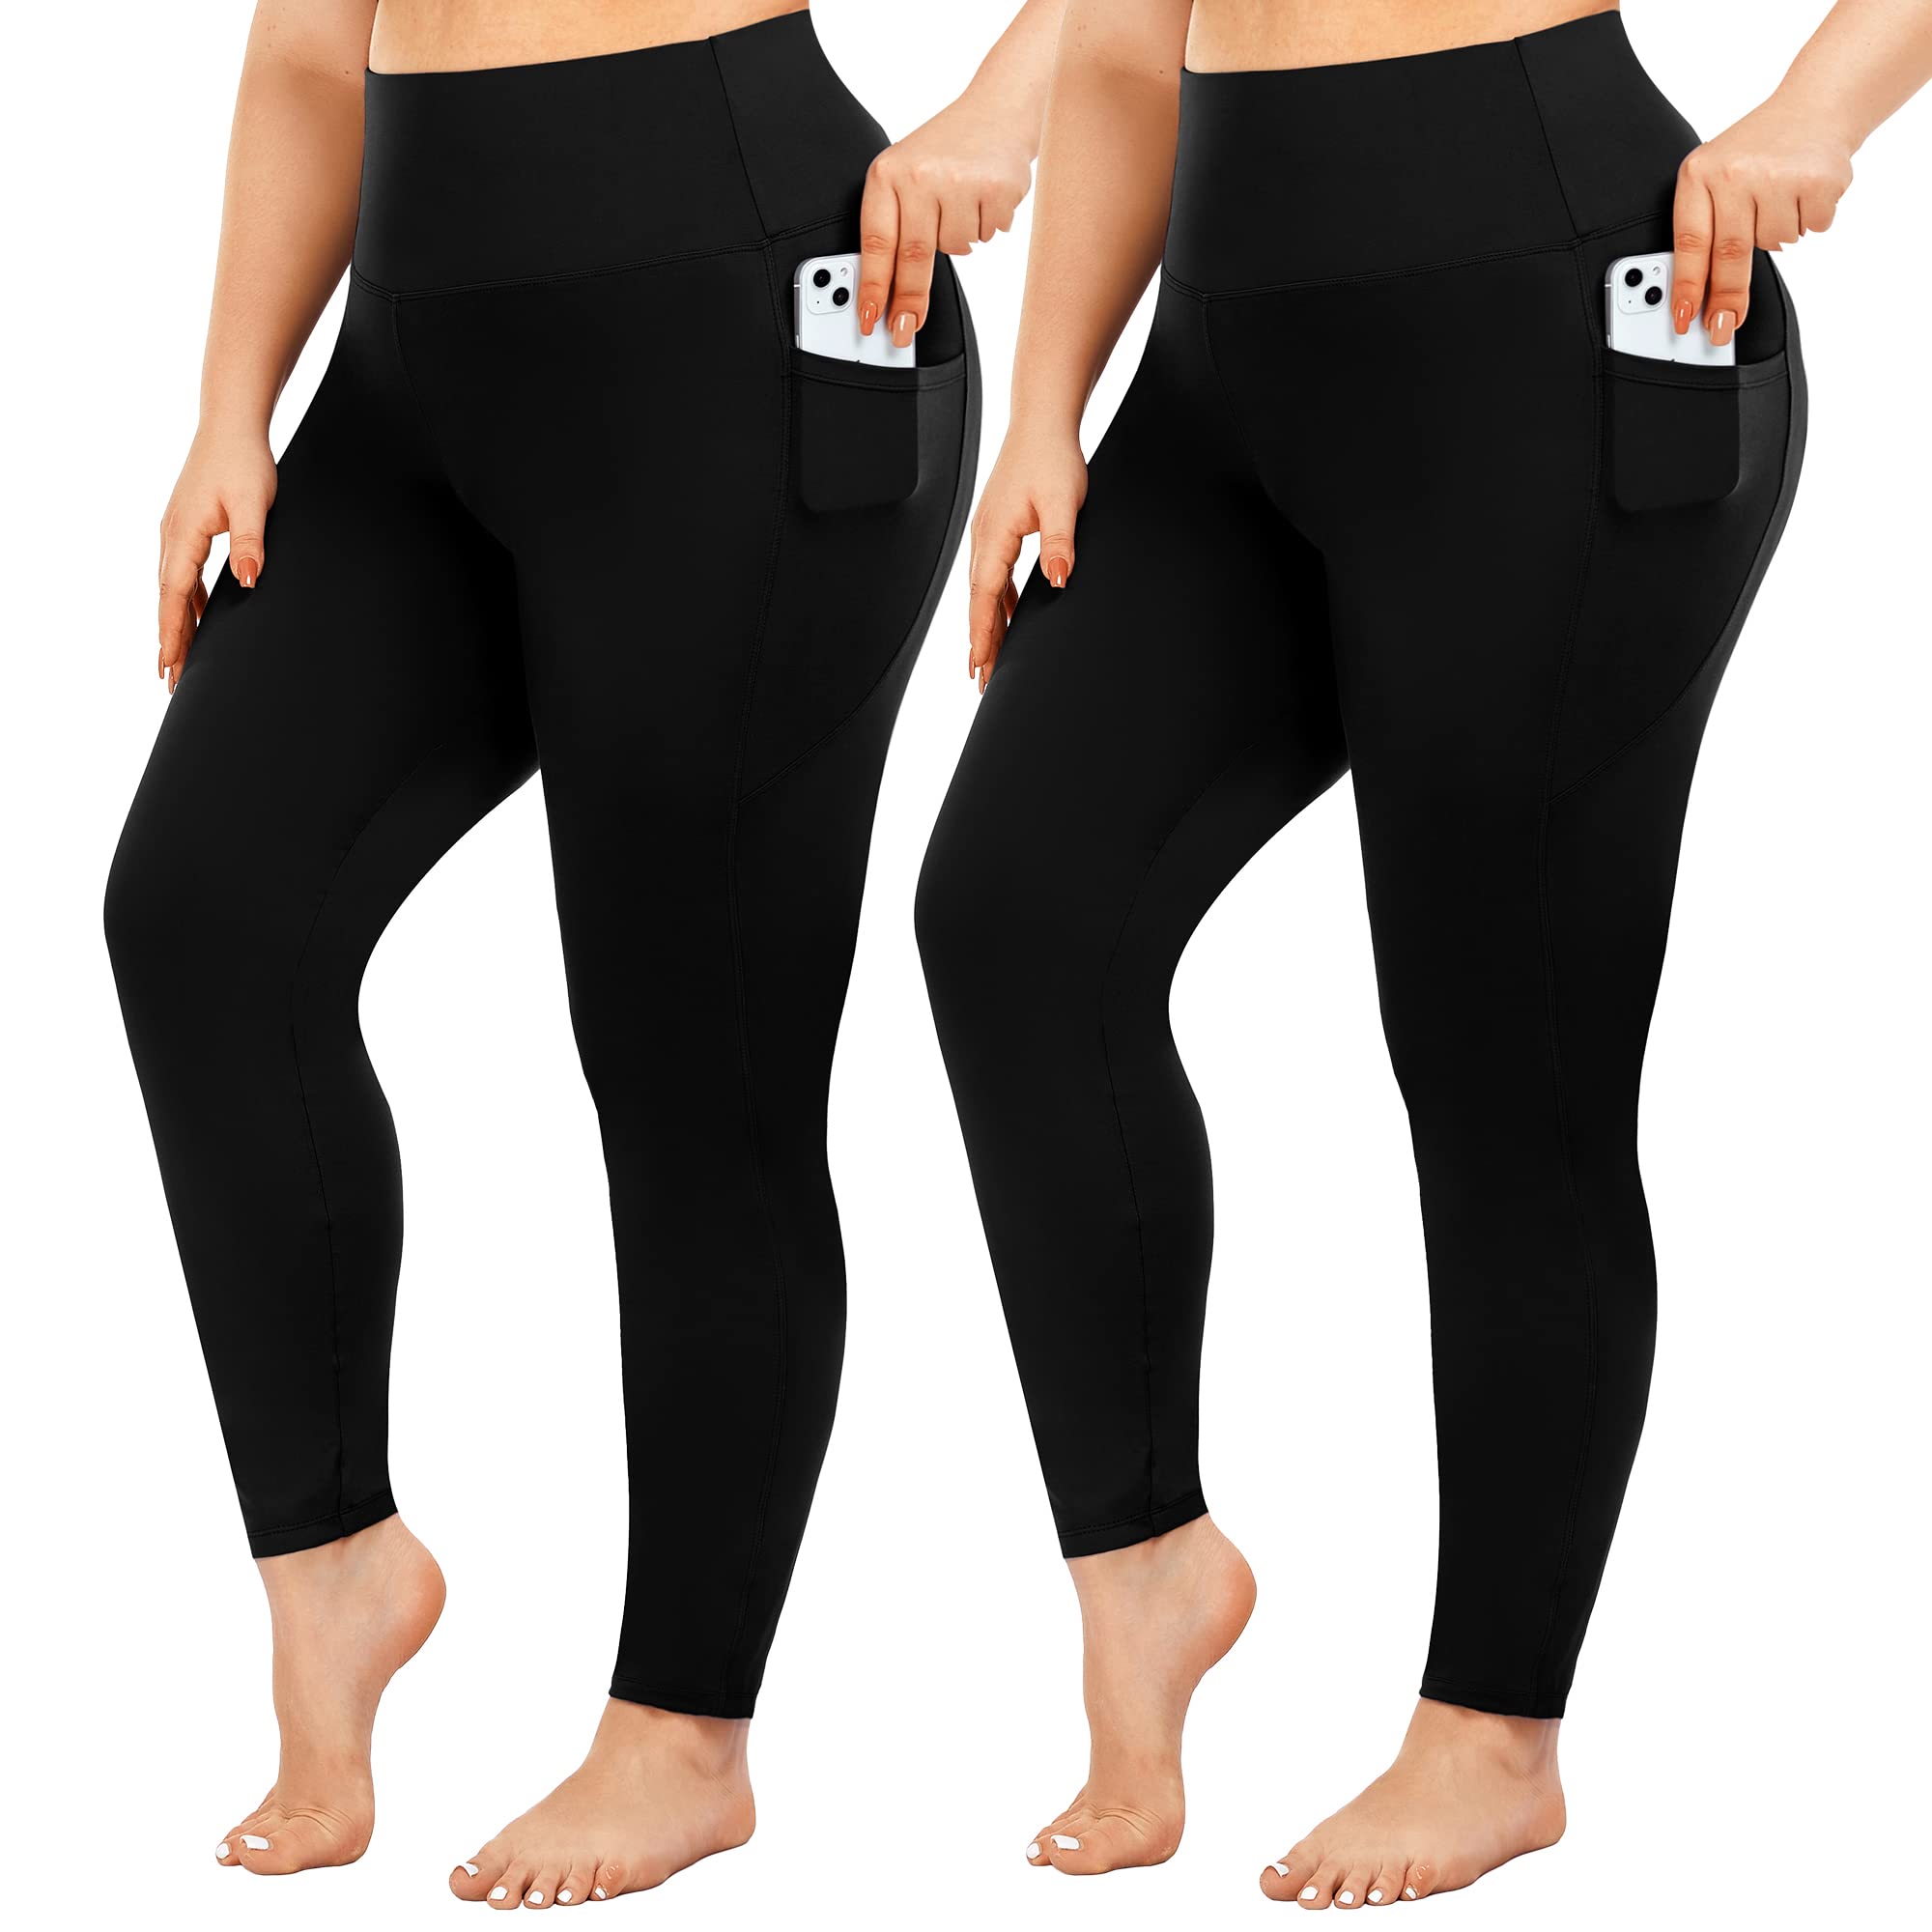 Women's Cotton Stretch Black Leggings - 2 Pack - Full Length - Soft Slim  Fit 